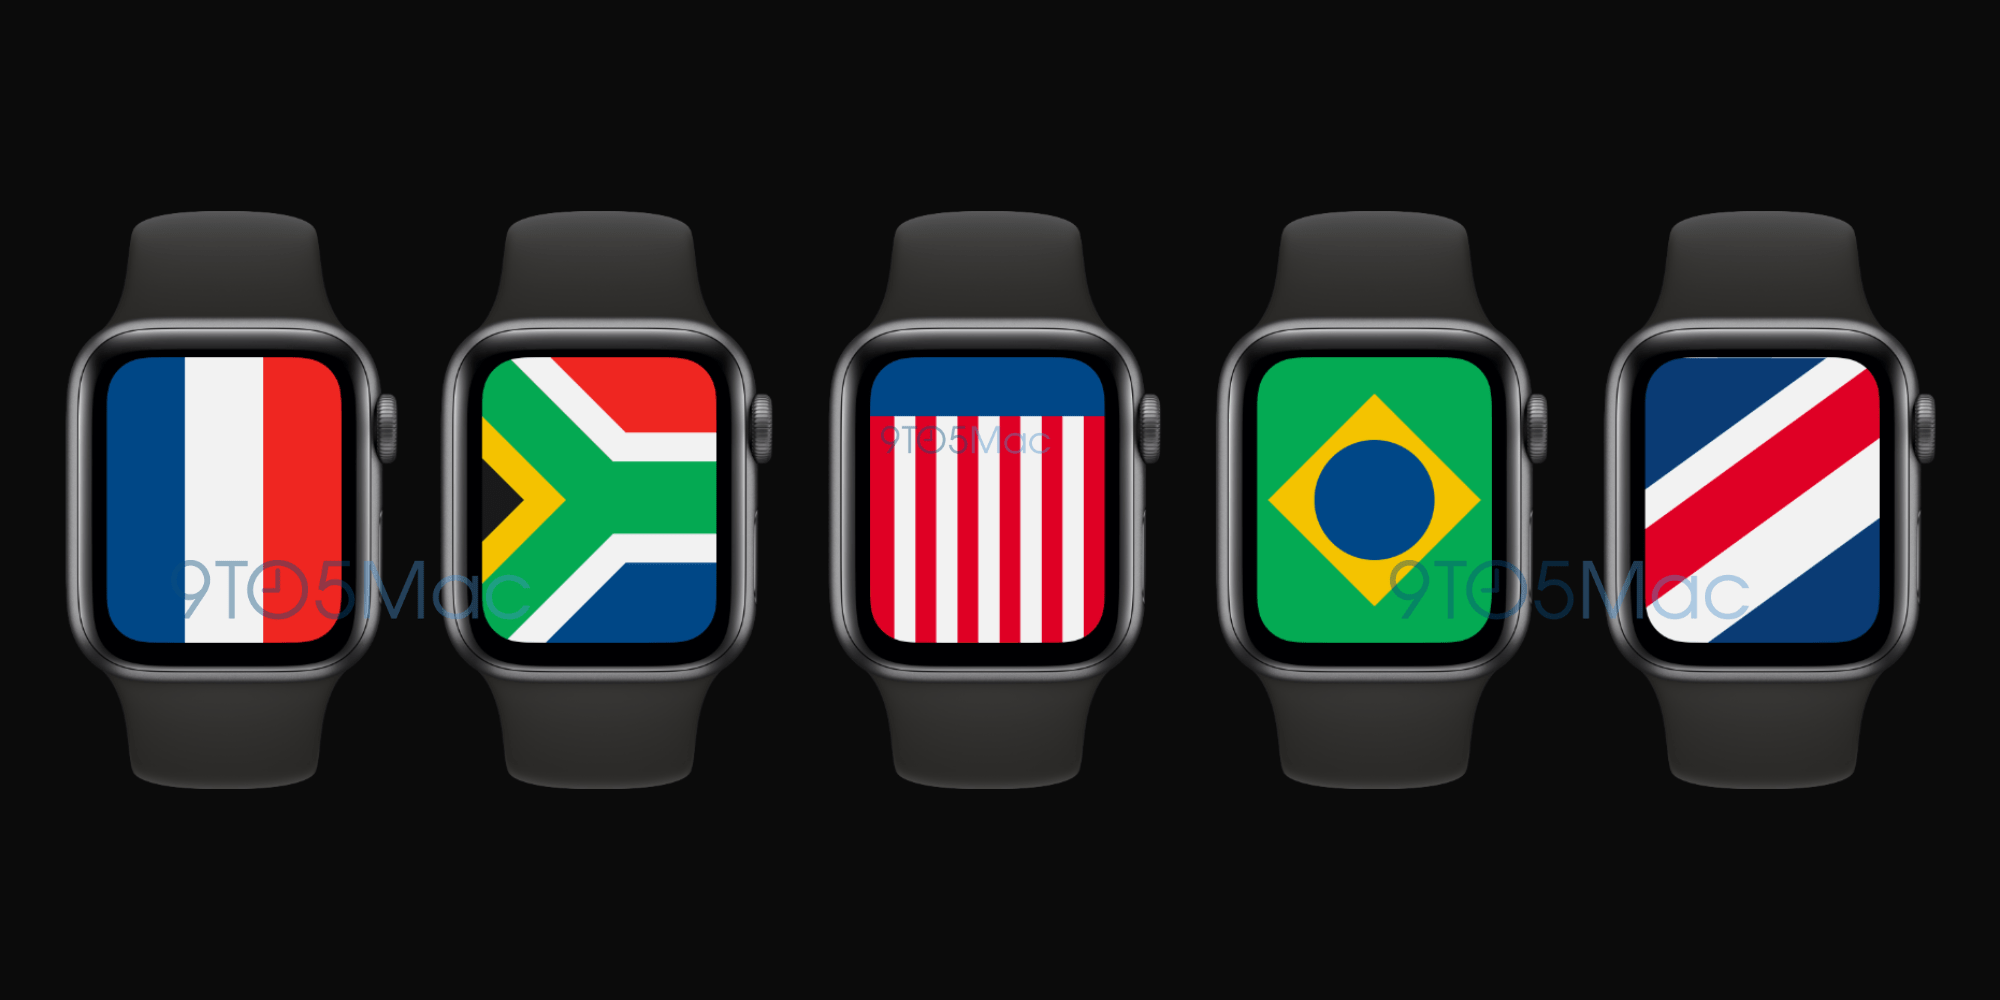 watchOS 7 sẽ có các mặt đồng hồ hình quốc kỳ của các nước trên thế giới